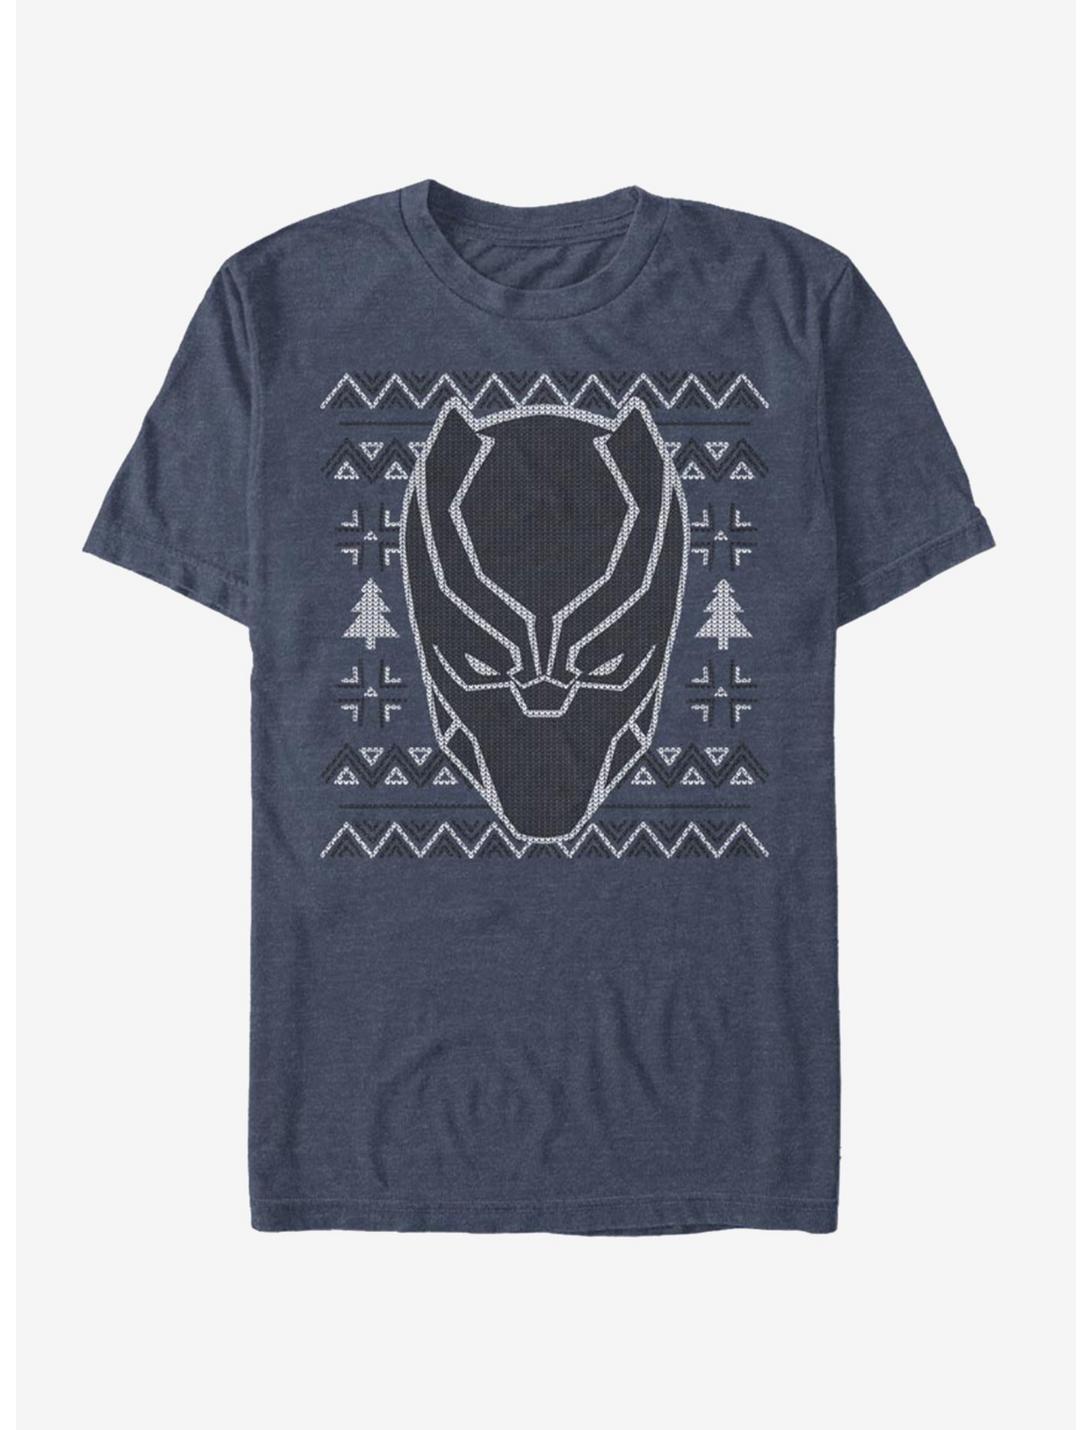 Marvel Black Panther Ugly Christmas Sweater Mask T-Shirt, NAVY HTR, hi-res